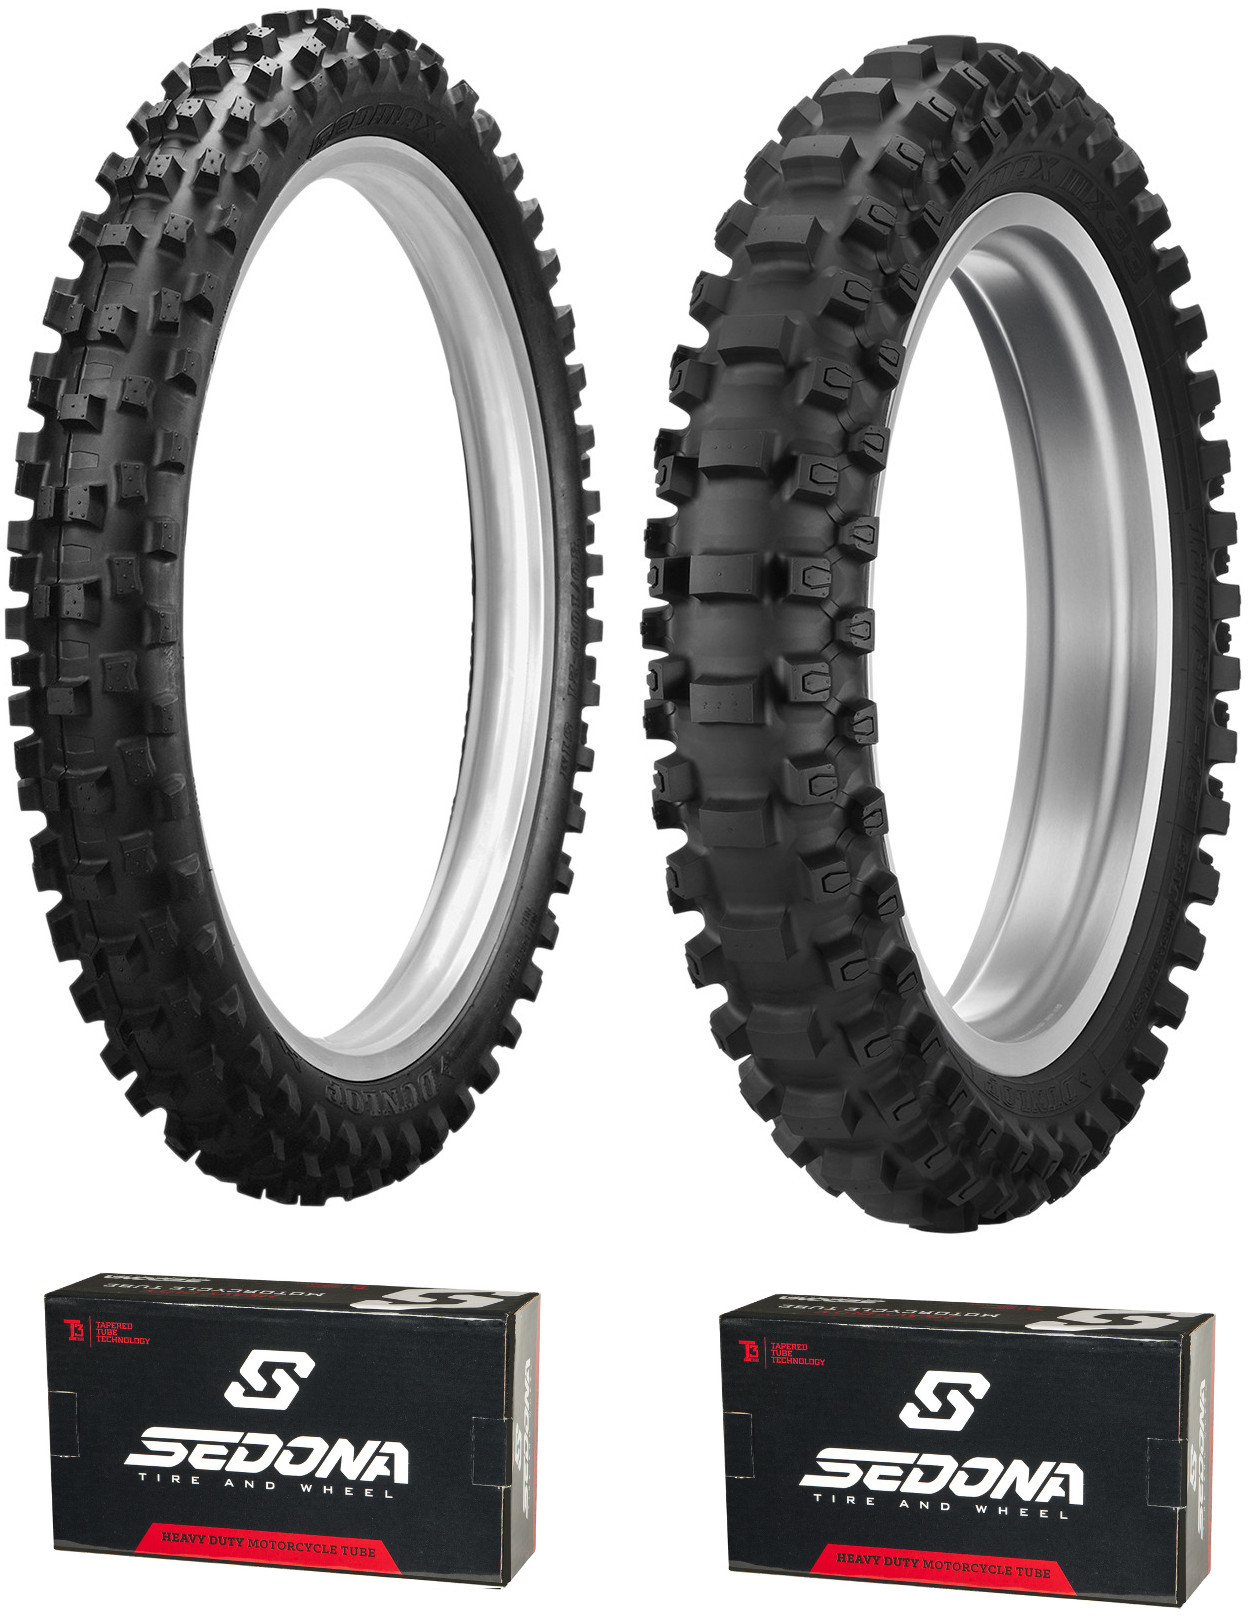 MX3S 80/100-21 & MX33 110/100-18 Tire Kit - w/ HD Sedona Tubes - Click Image to Close